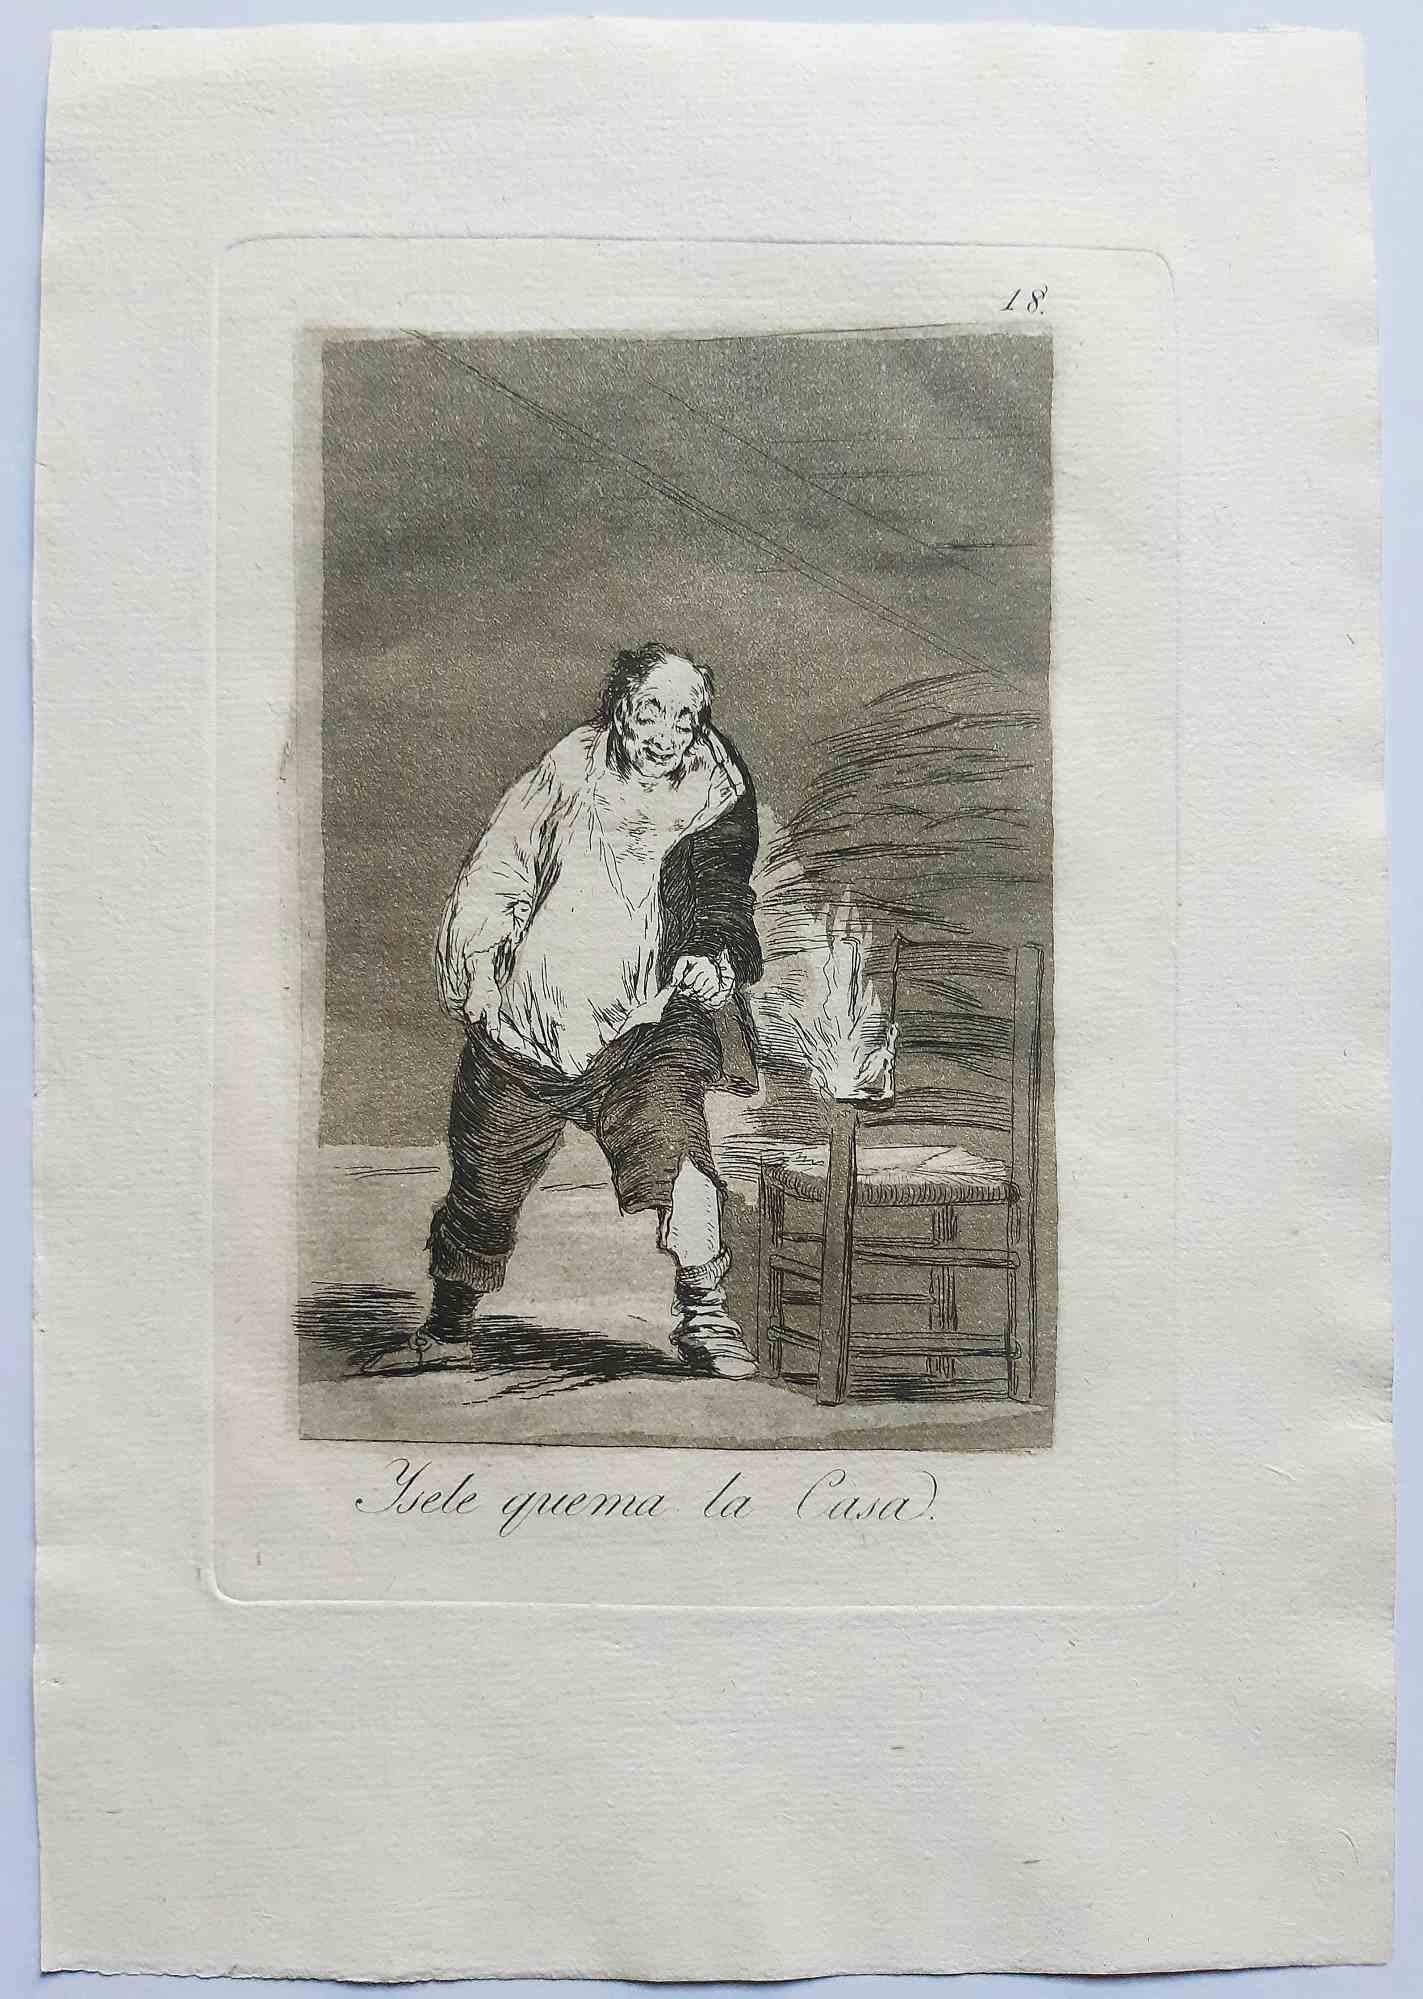 Y se le quema la casa est une œuvre d'art originale réalisée par l'artiste Francisco Goya et publiée en 1799.

Gravure sur papier.

Cette gravure fait partie de la rare première édition de "Los Caprichos" publiée en 1799 par la Calcografia Nacional